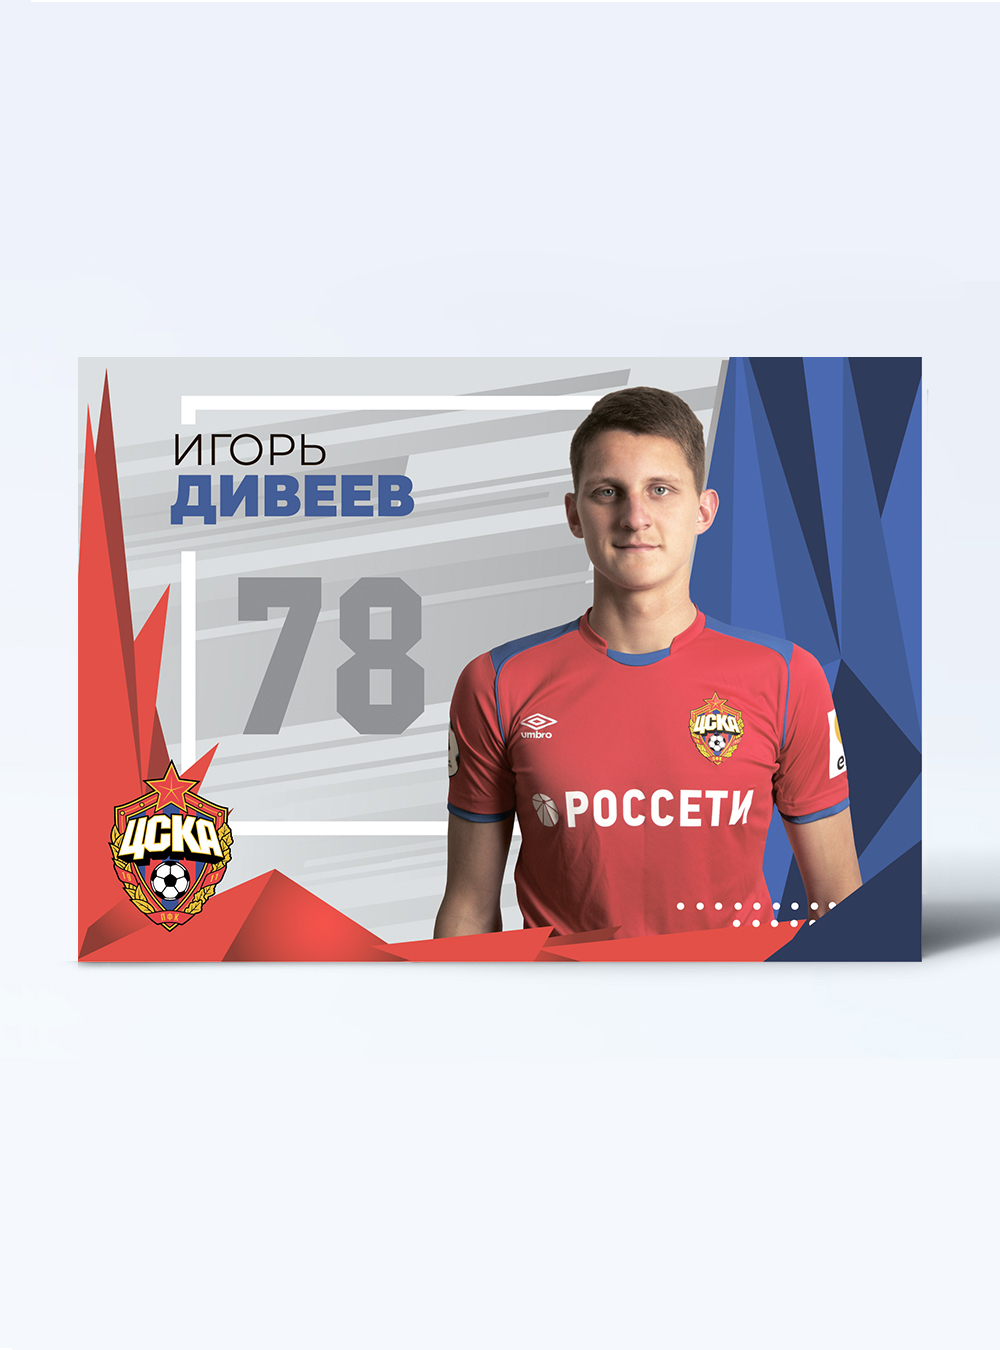 Карточка для автографа Дивеев 2019/2020 от Cskashop